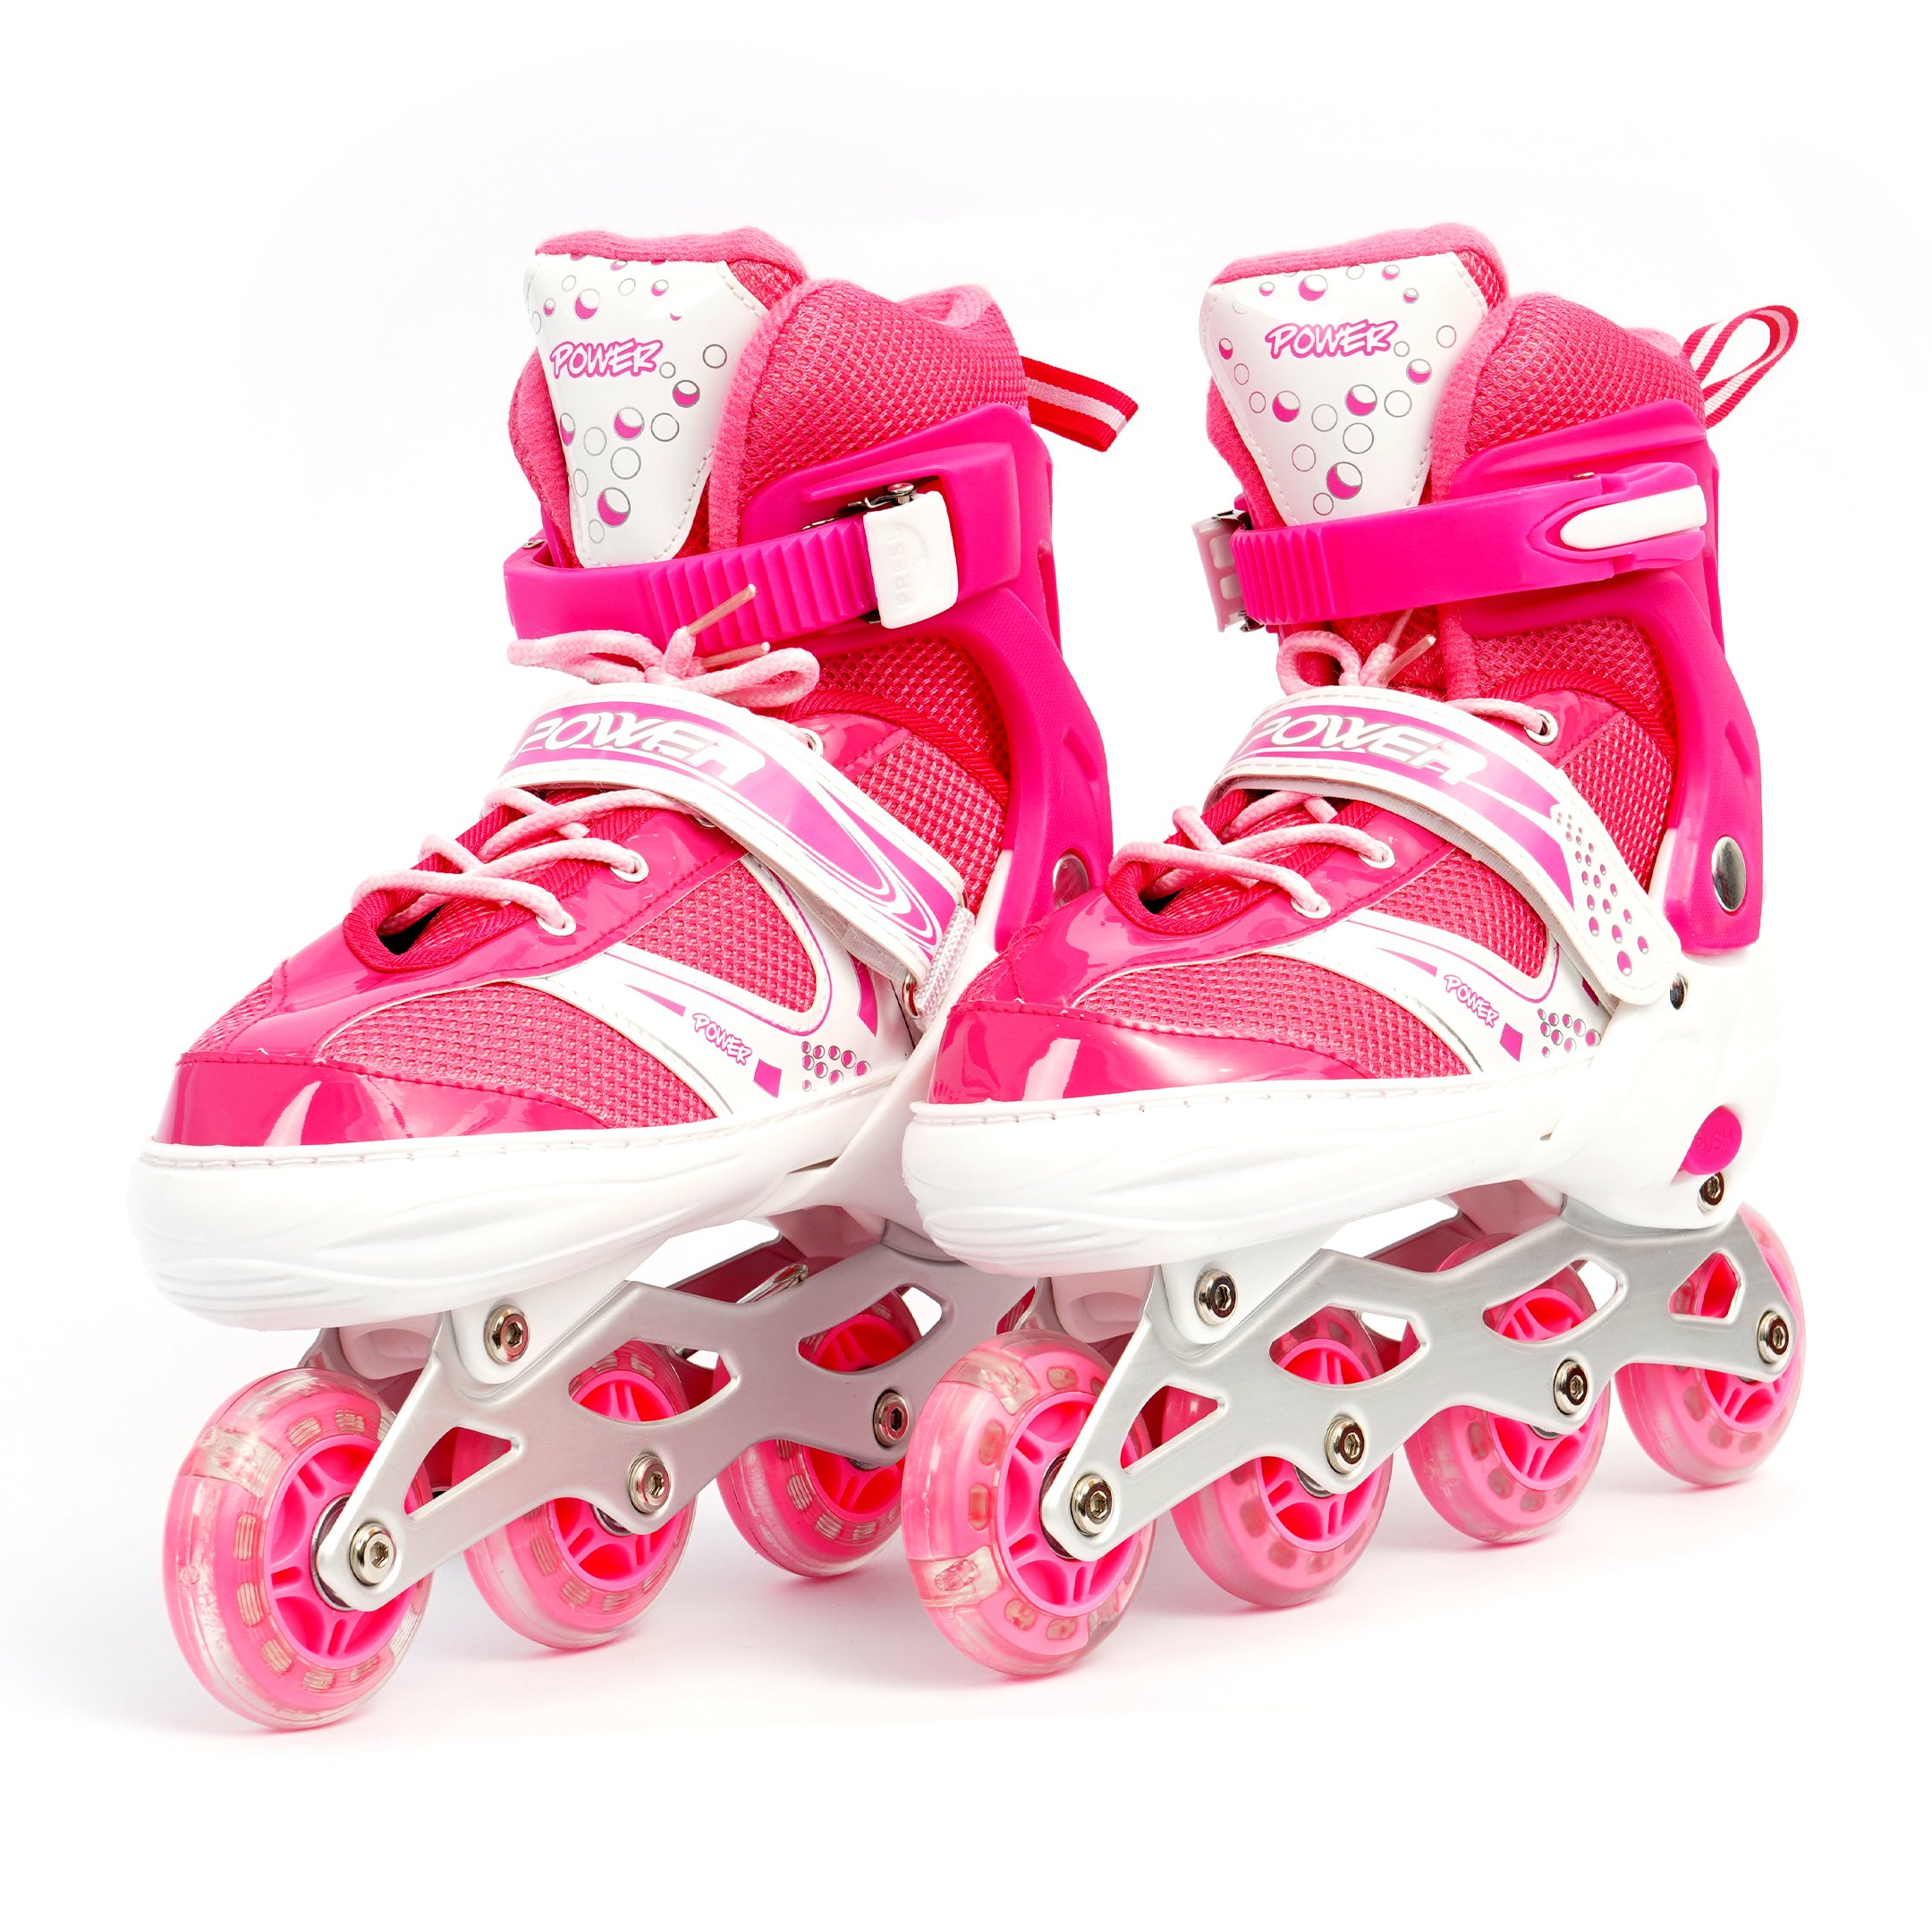 Skating Shoes Single Row - Pink